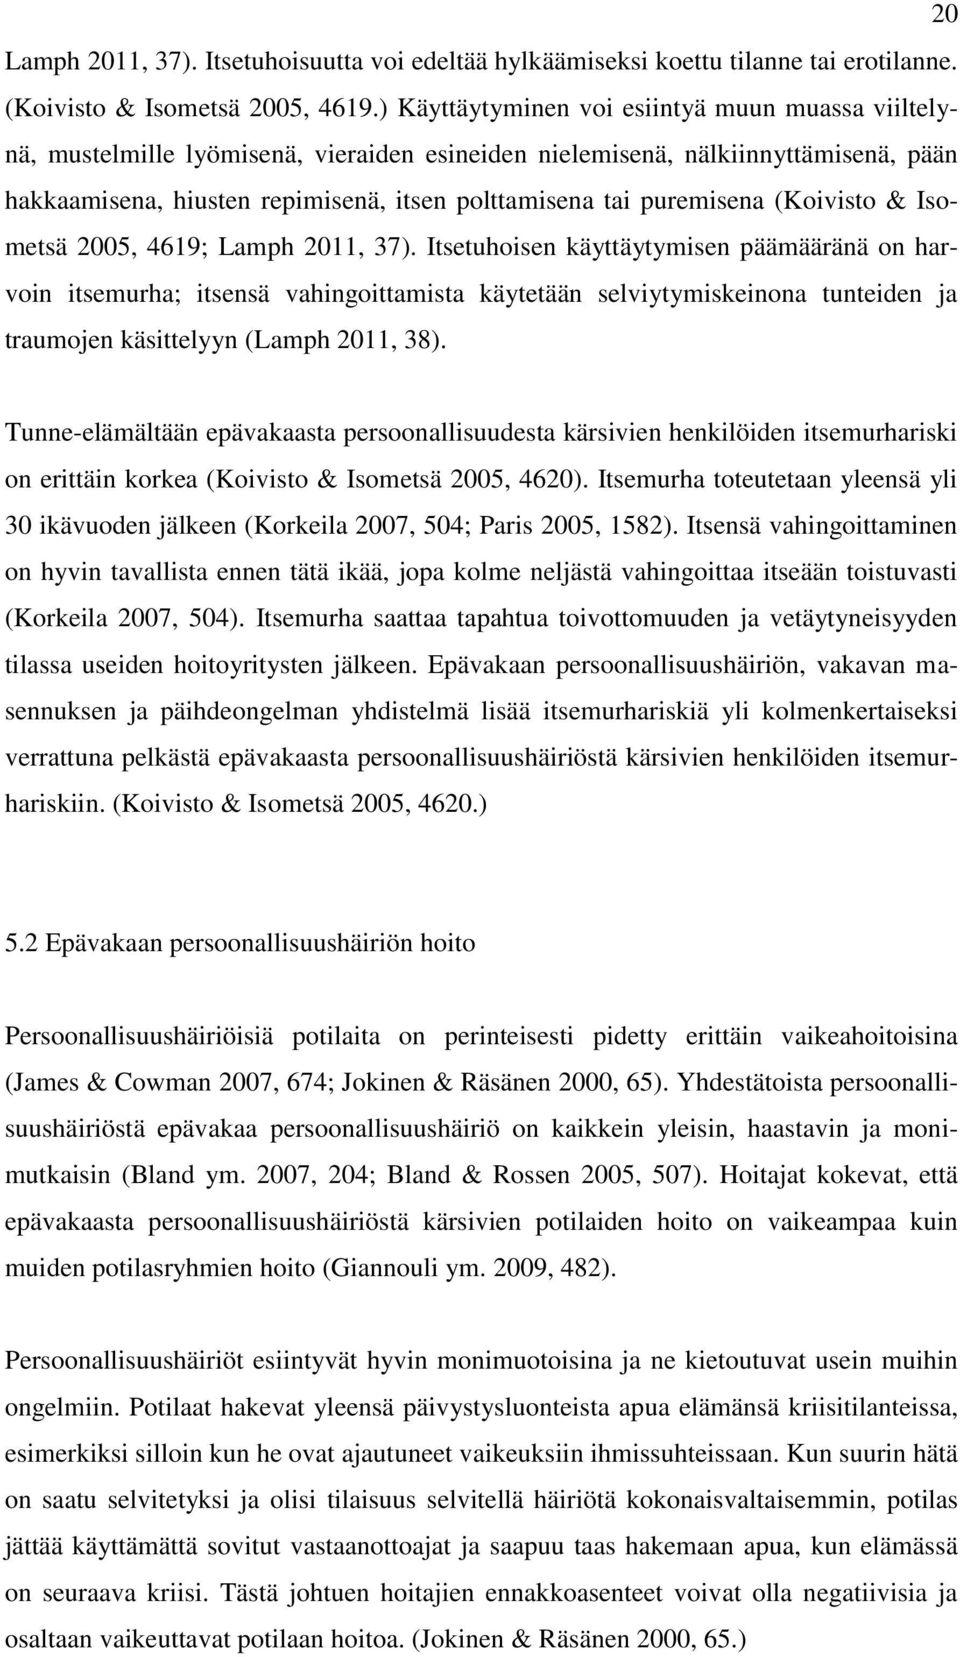 puremisena (Koivisto & Isometsä 25, 4619; Lamph 211, 37).